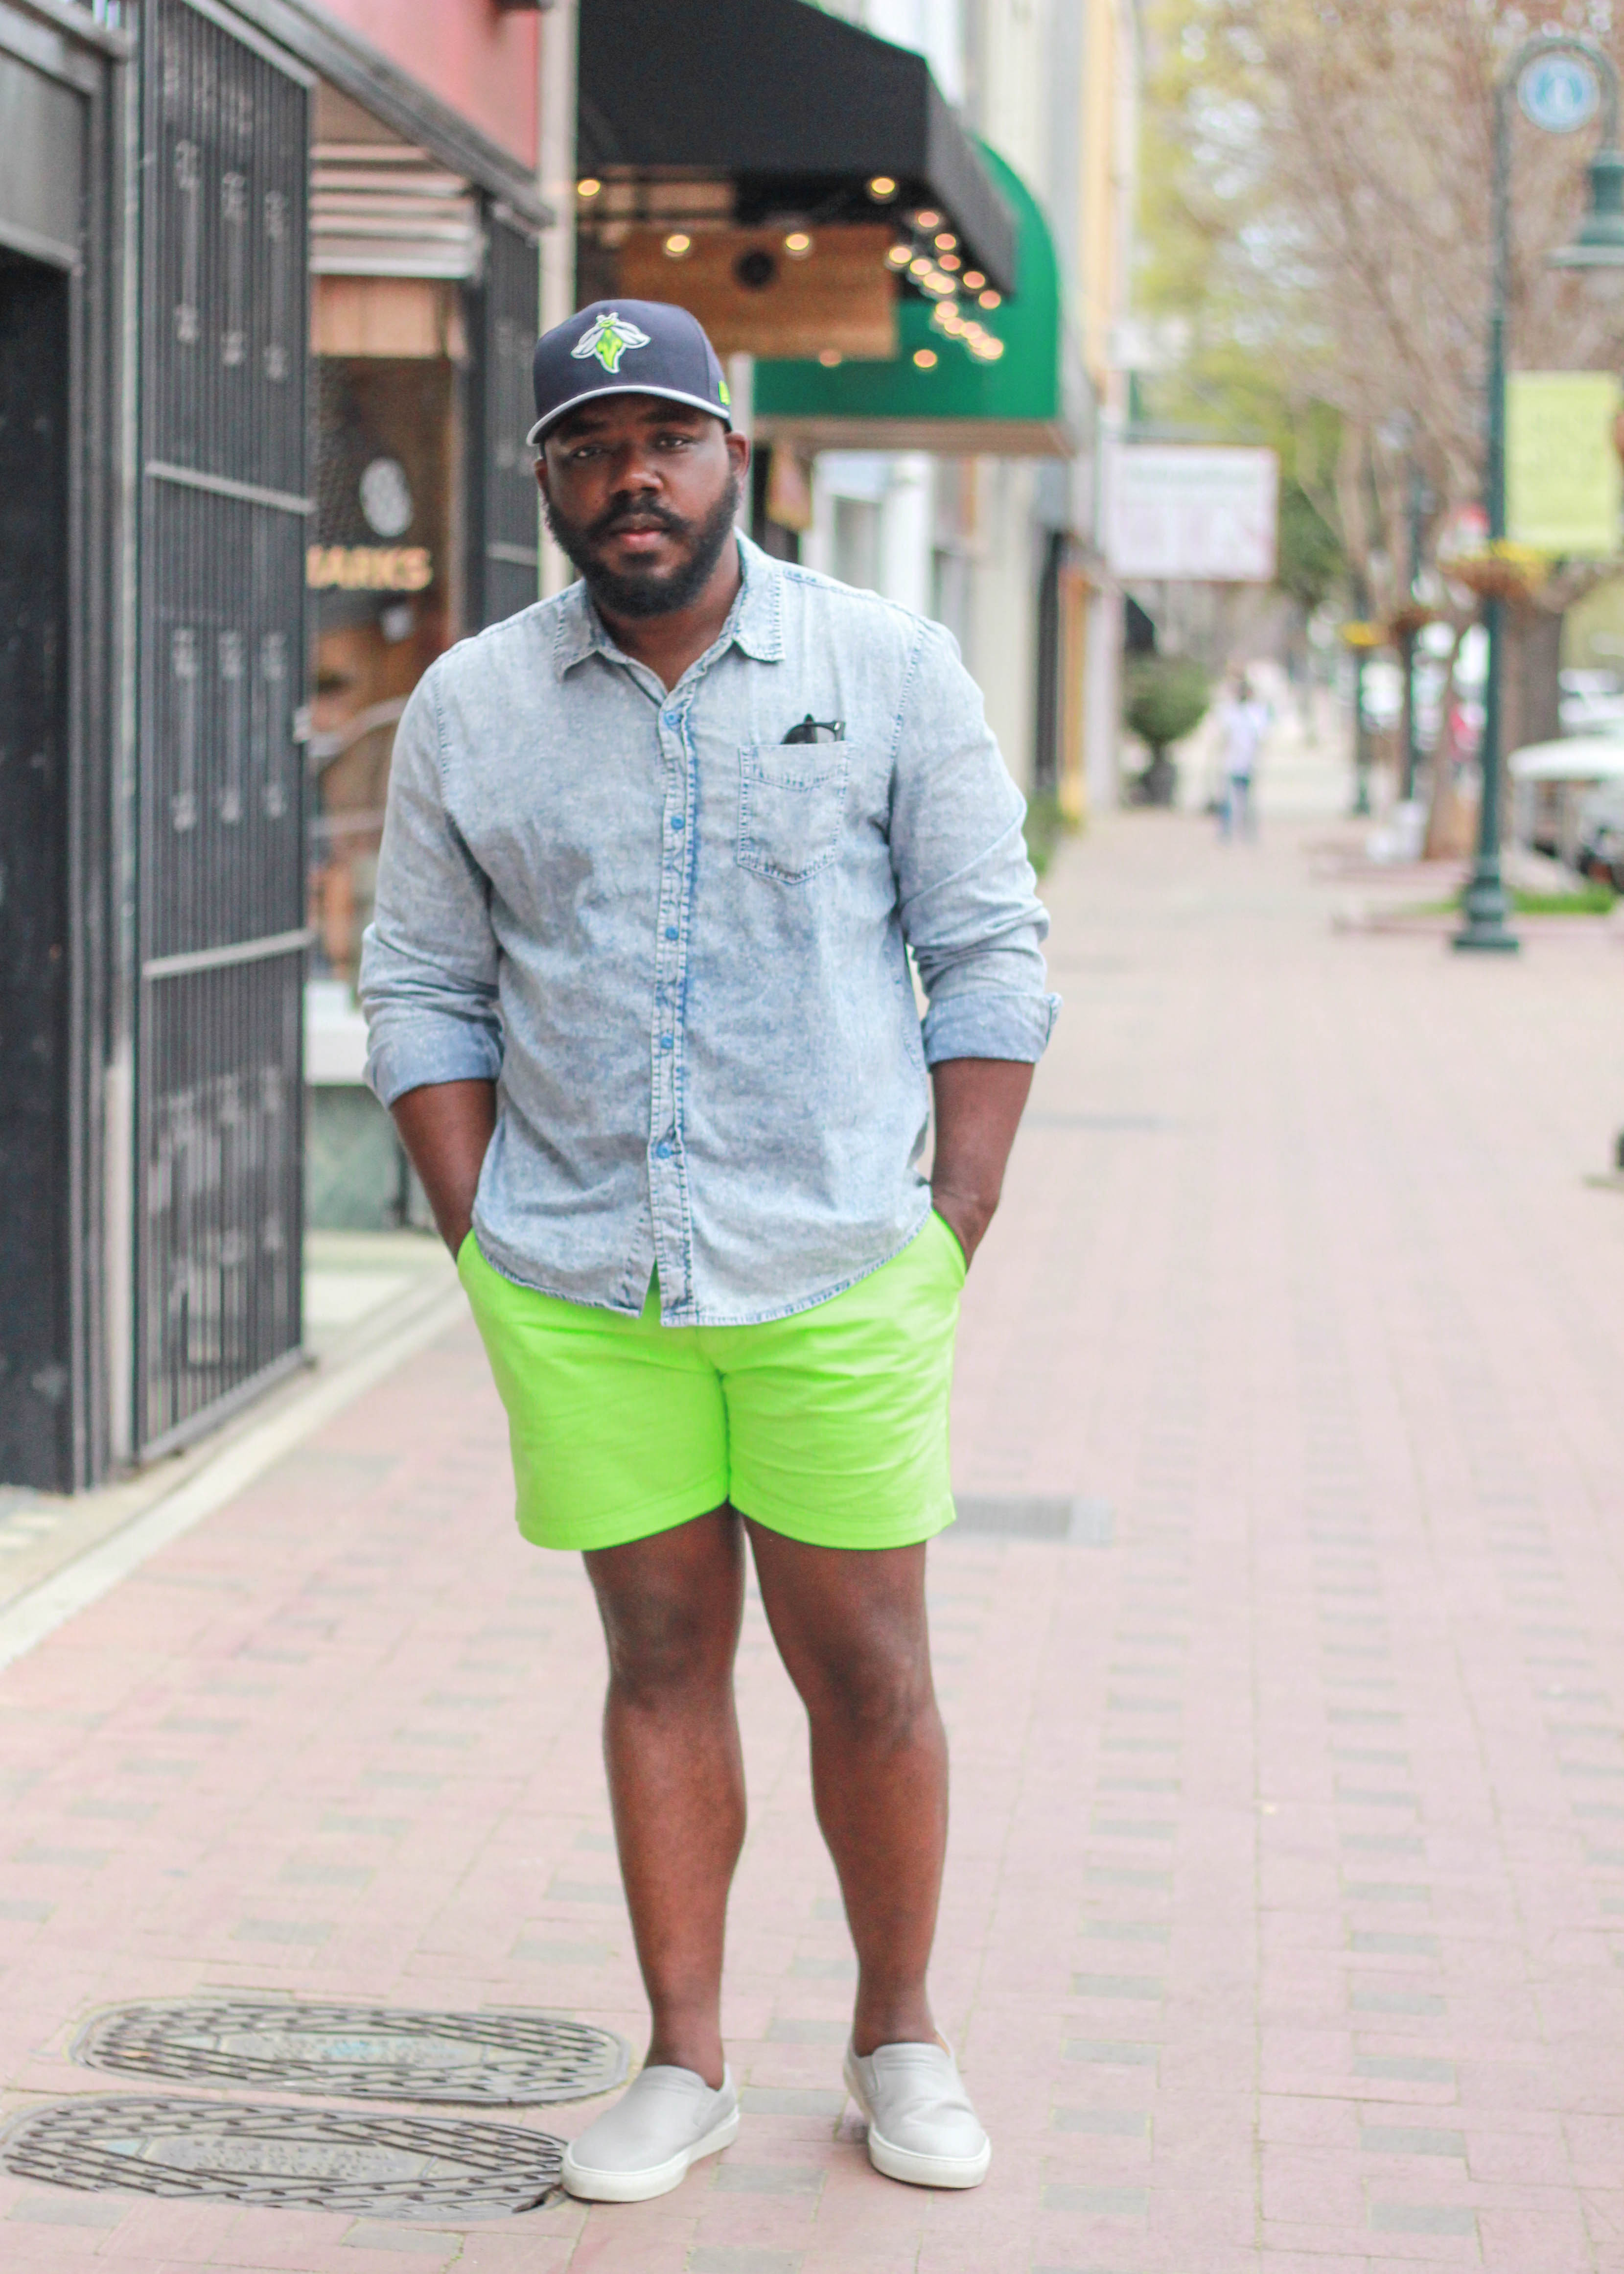 neon green shorts mens